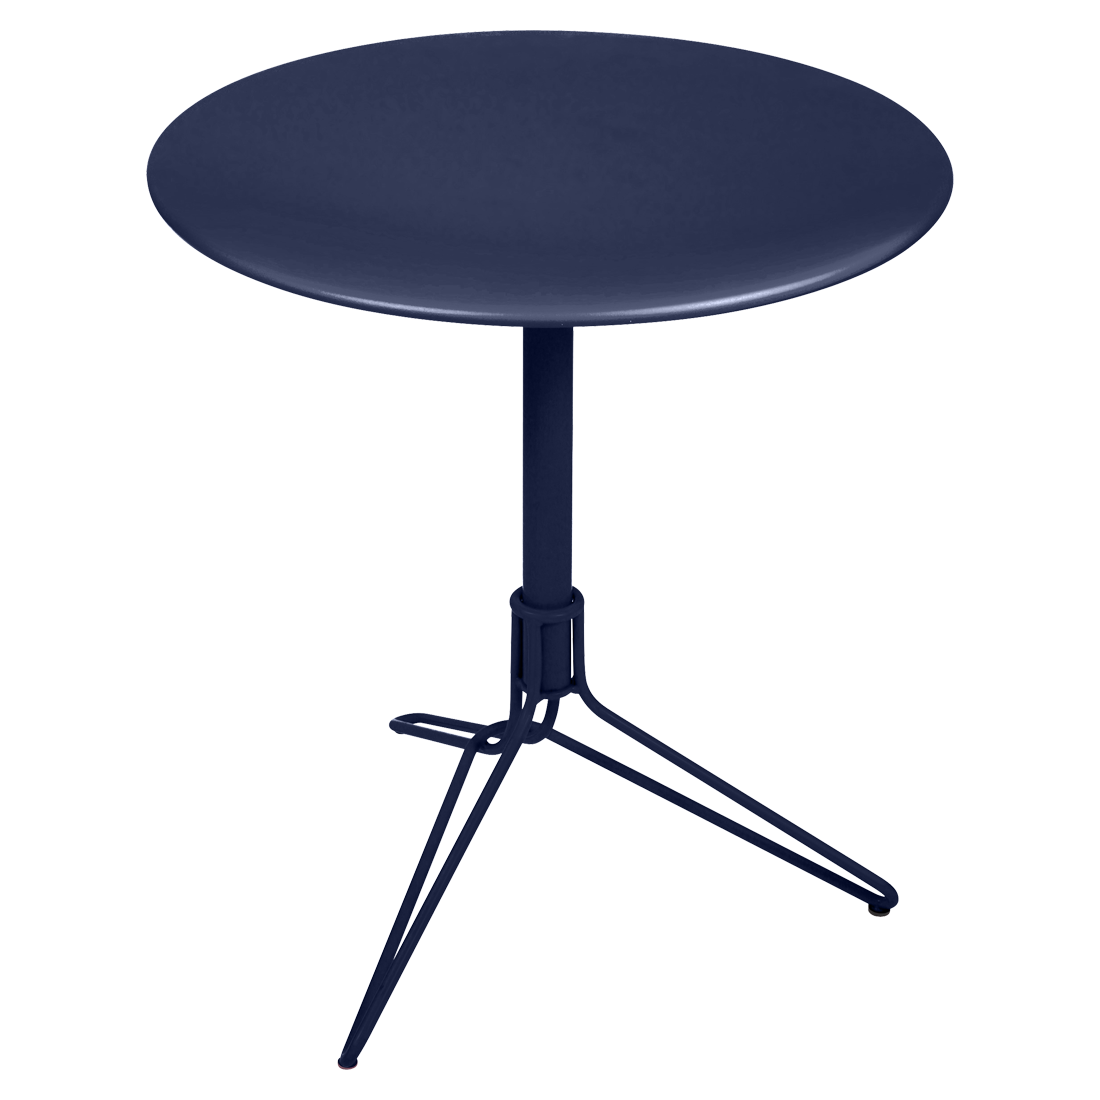 petite table metal, petite table ronde, petite table terrasse, table balcon, gueridon metal, petite table bleu